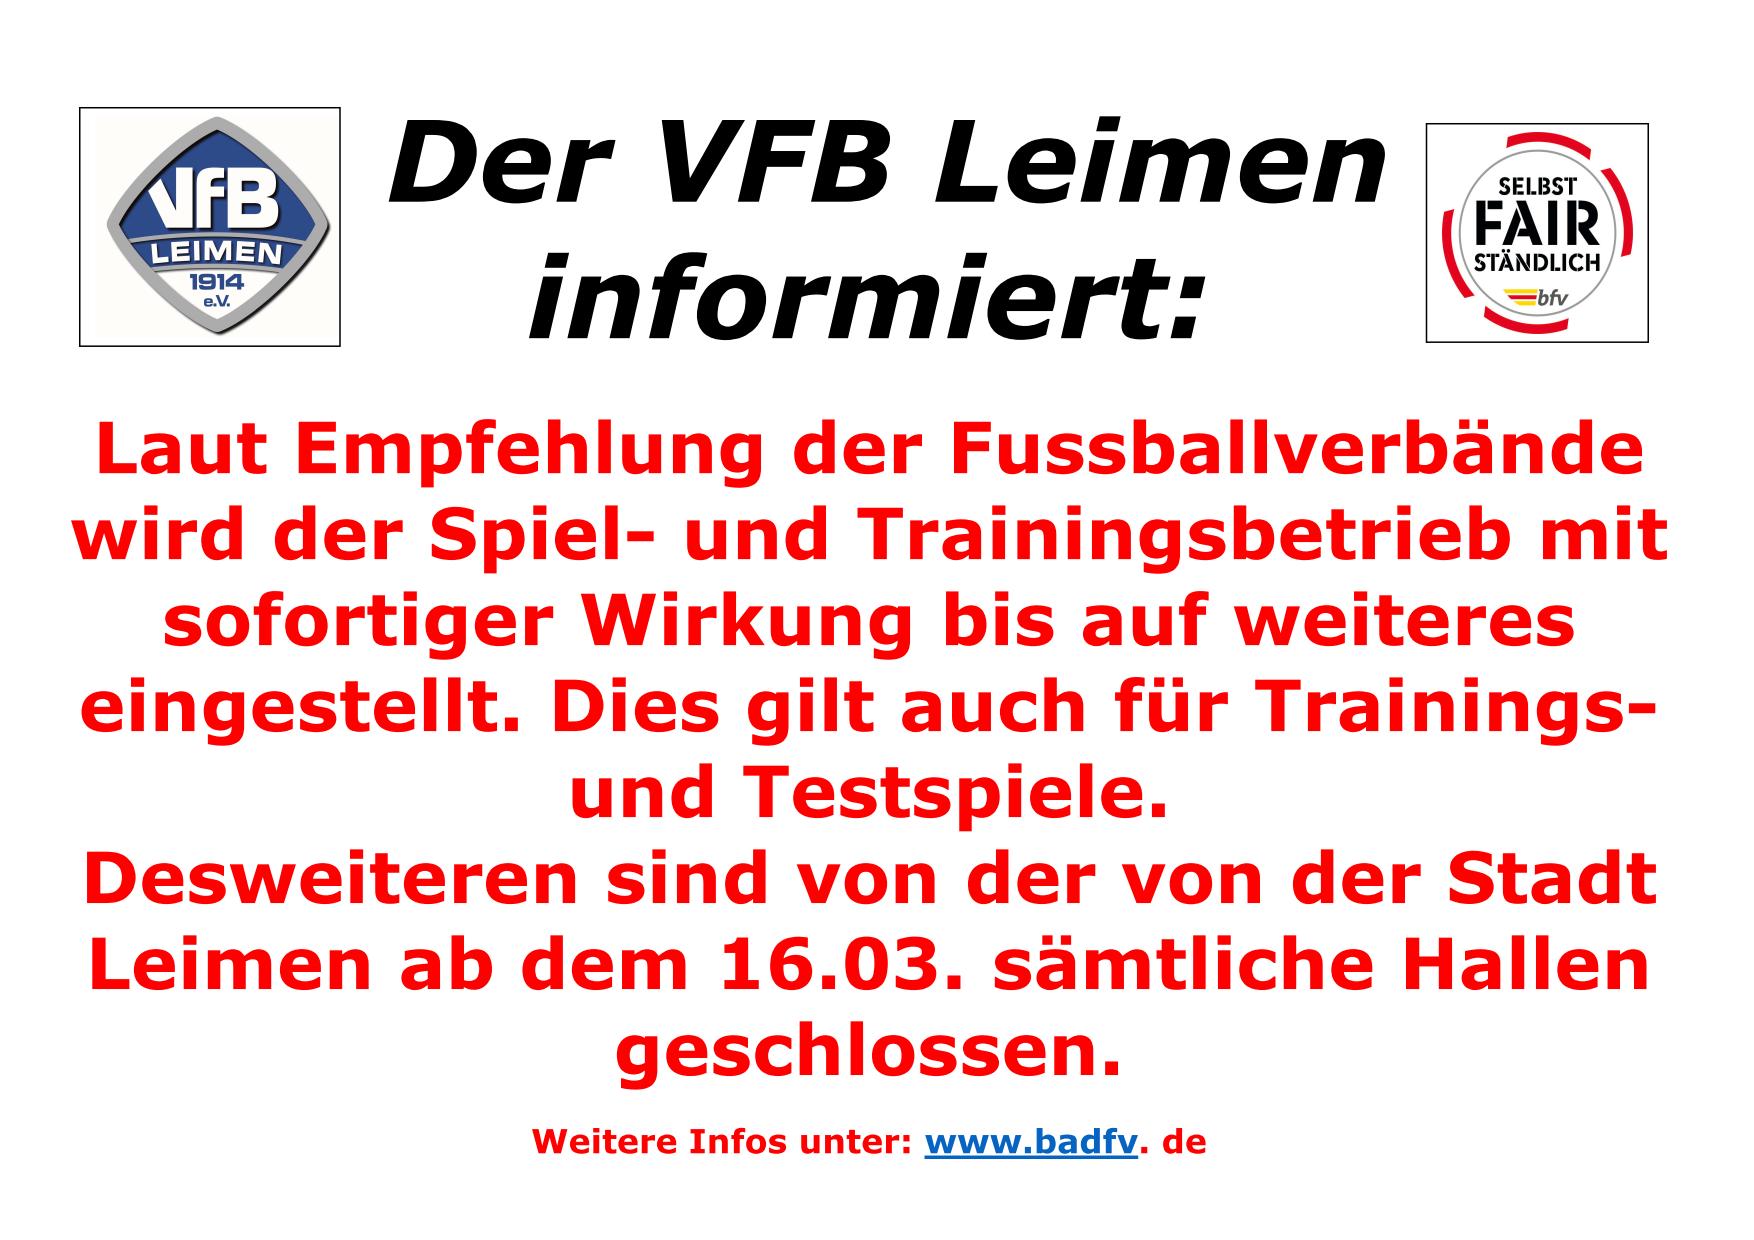 VFB Leimen stellt Spiel- und Trainingsbetrieb ein